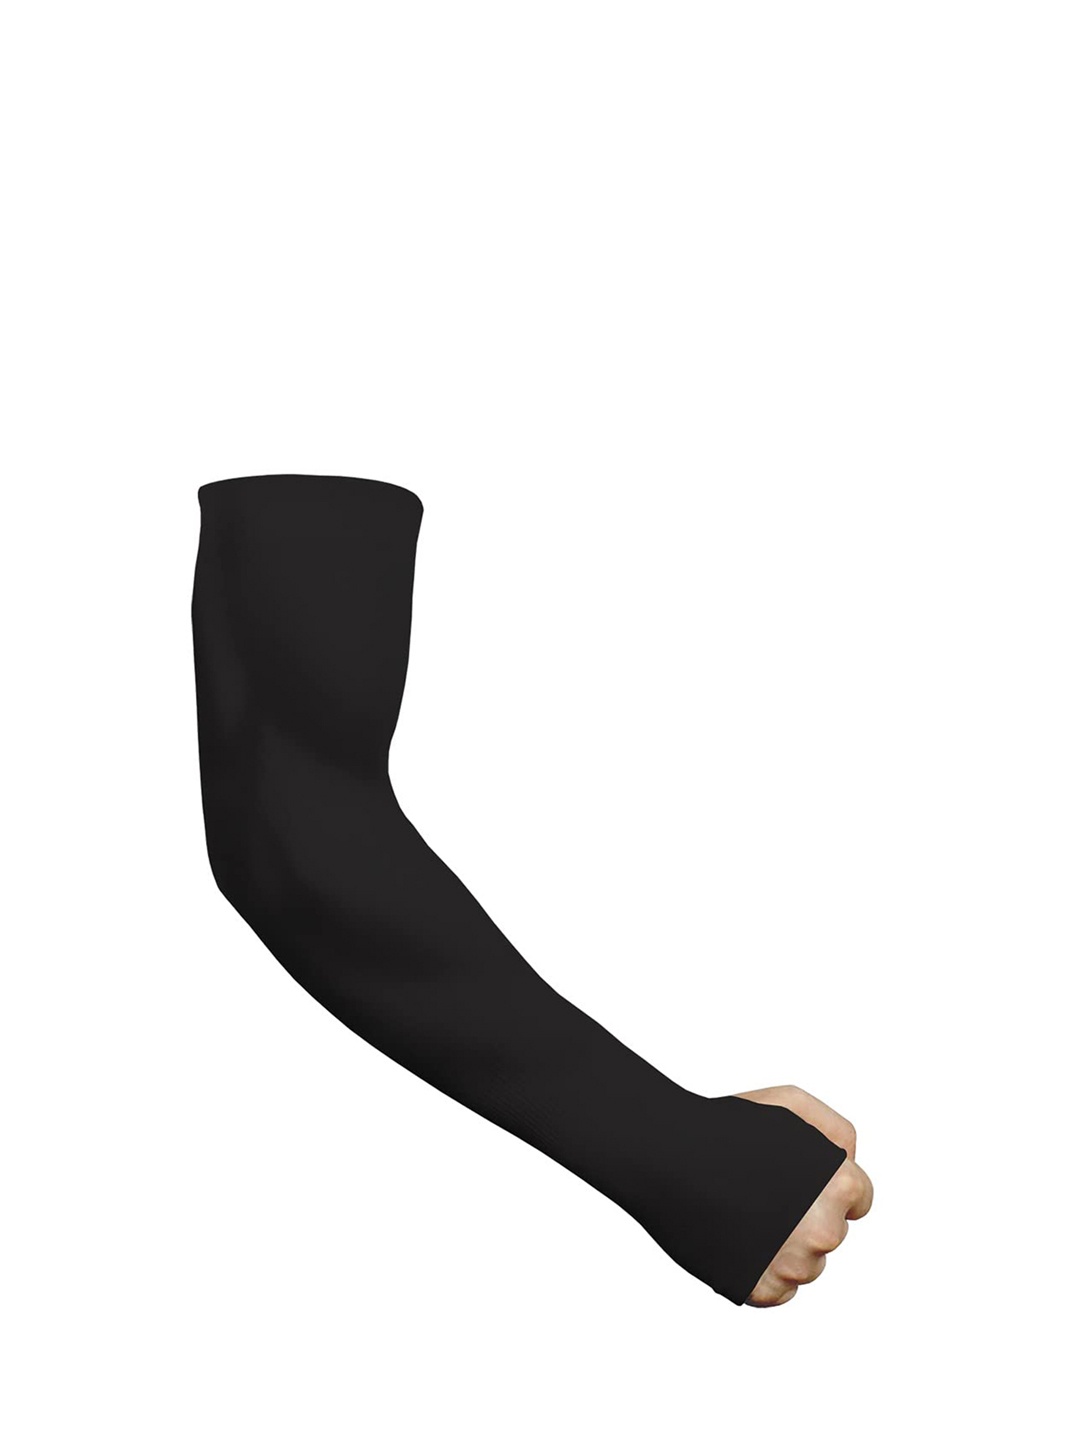 

CareDone Unisex UPF 50+ Breathable Fingerless Gloves, Black